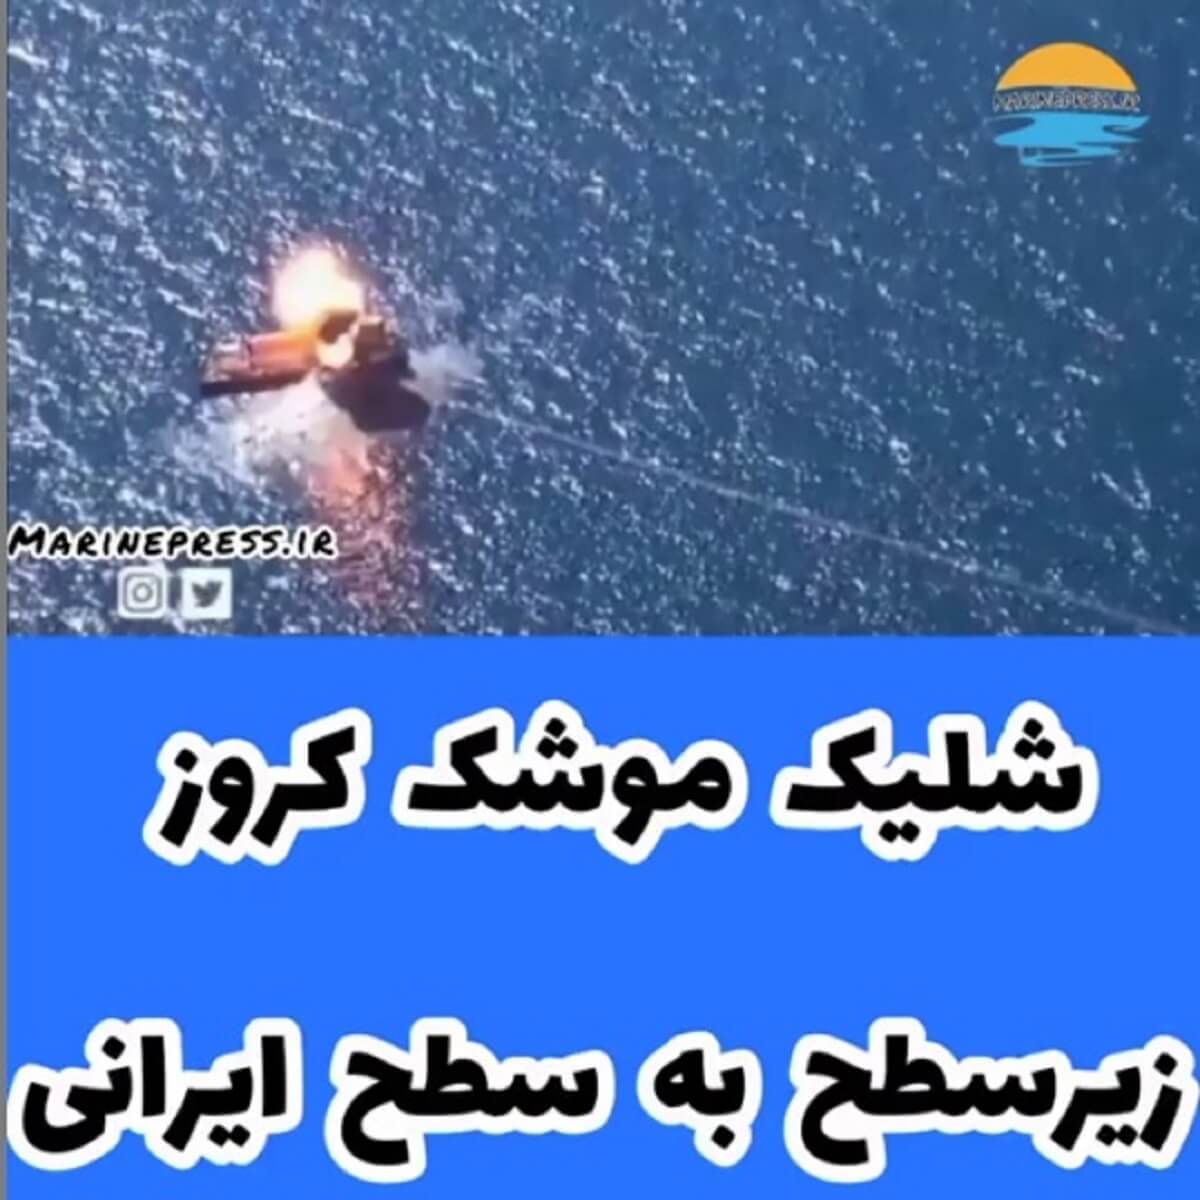 فیلم جدید از شلیک موشک کروز زیرسطح به سطح ایرانی